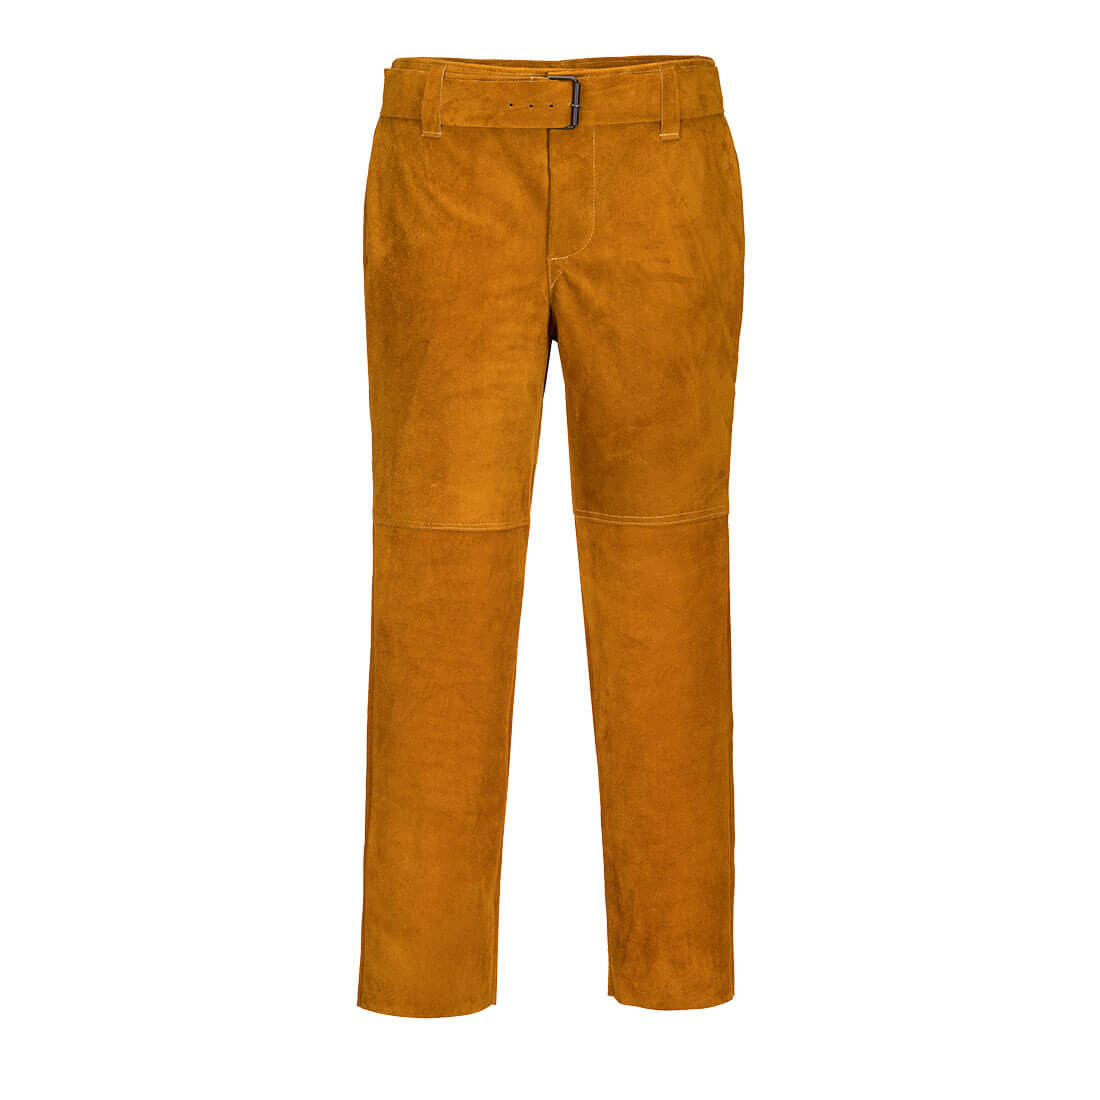 Pantalon de soudage en cuir - Les équipements de protection individuelle